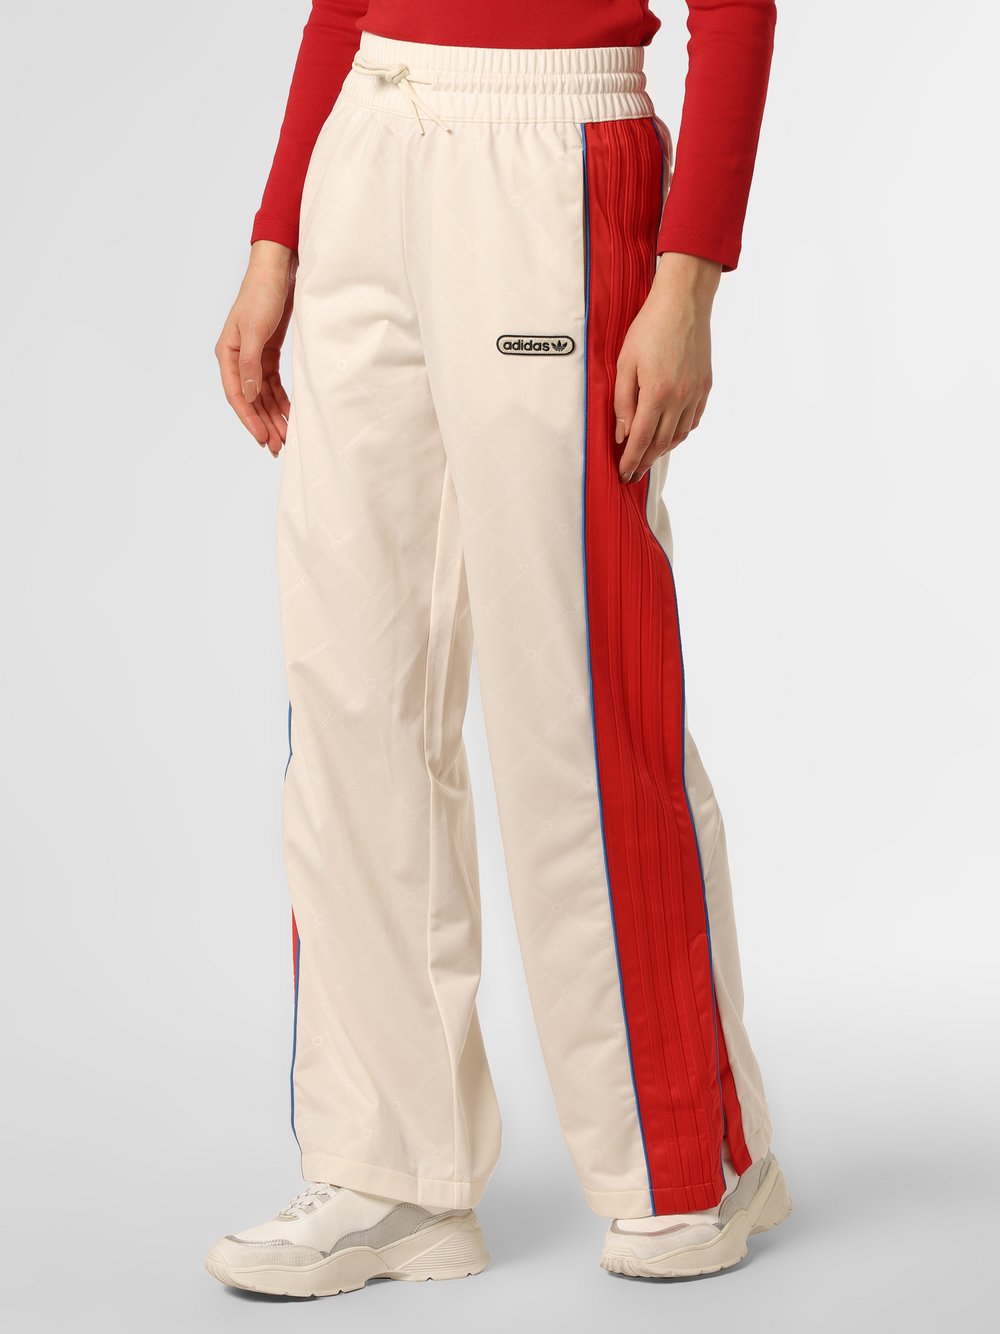 Adidas Originals - Spodnie damskie, biały